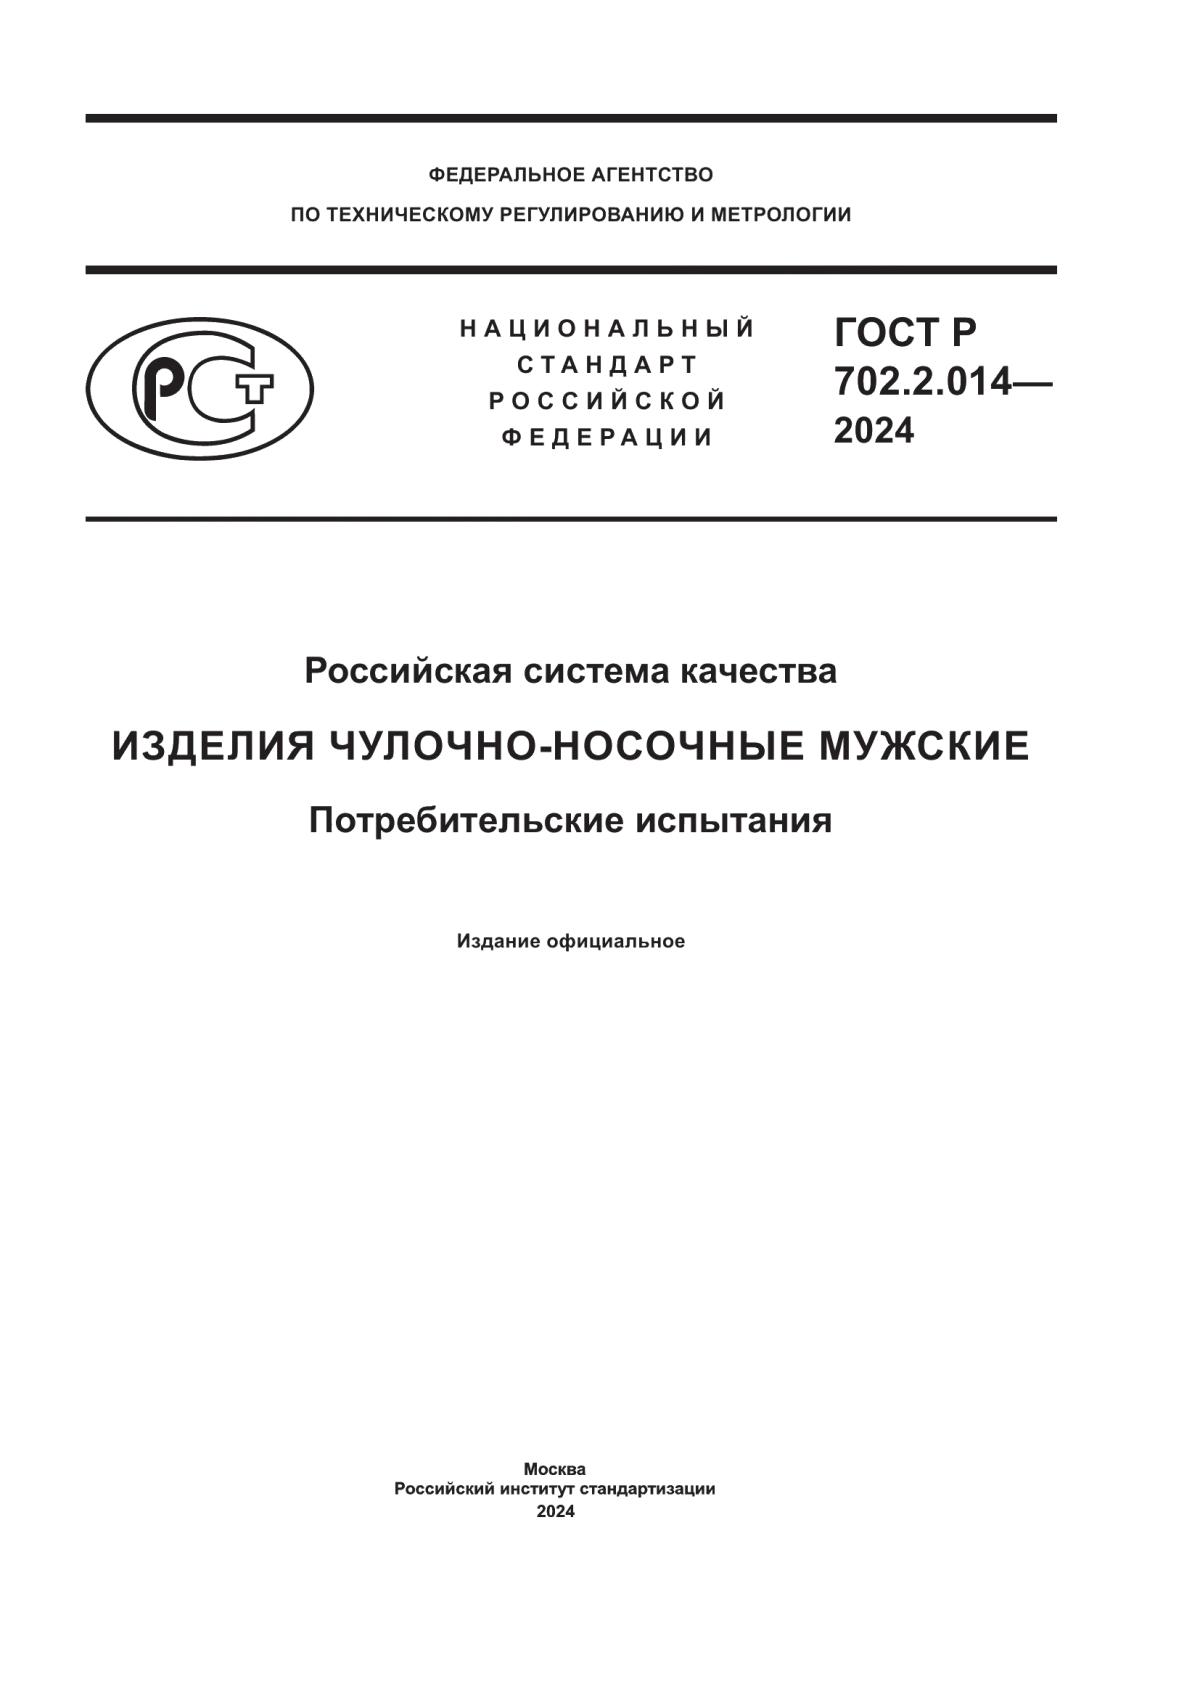 ГОСТ Р 702.2.014-2024 Российская система качества. Изделия чулочно-носочные мужские. Потребительские испытания